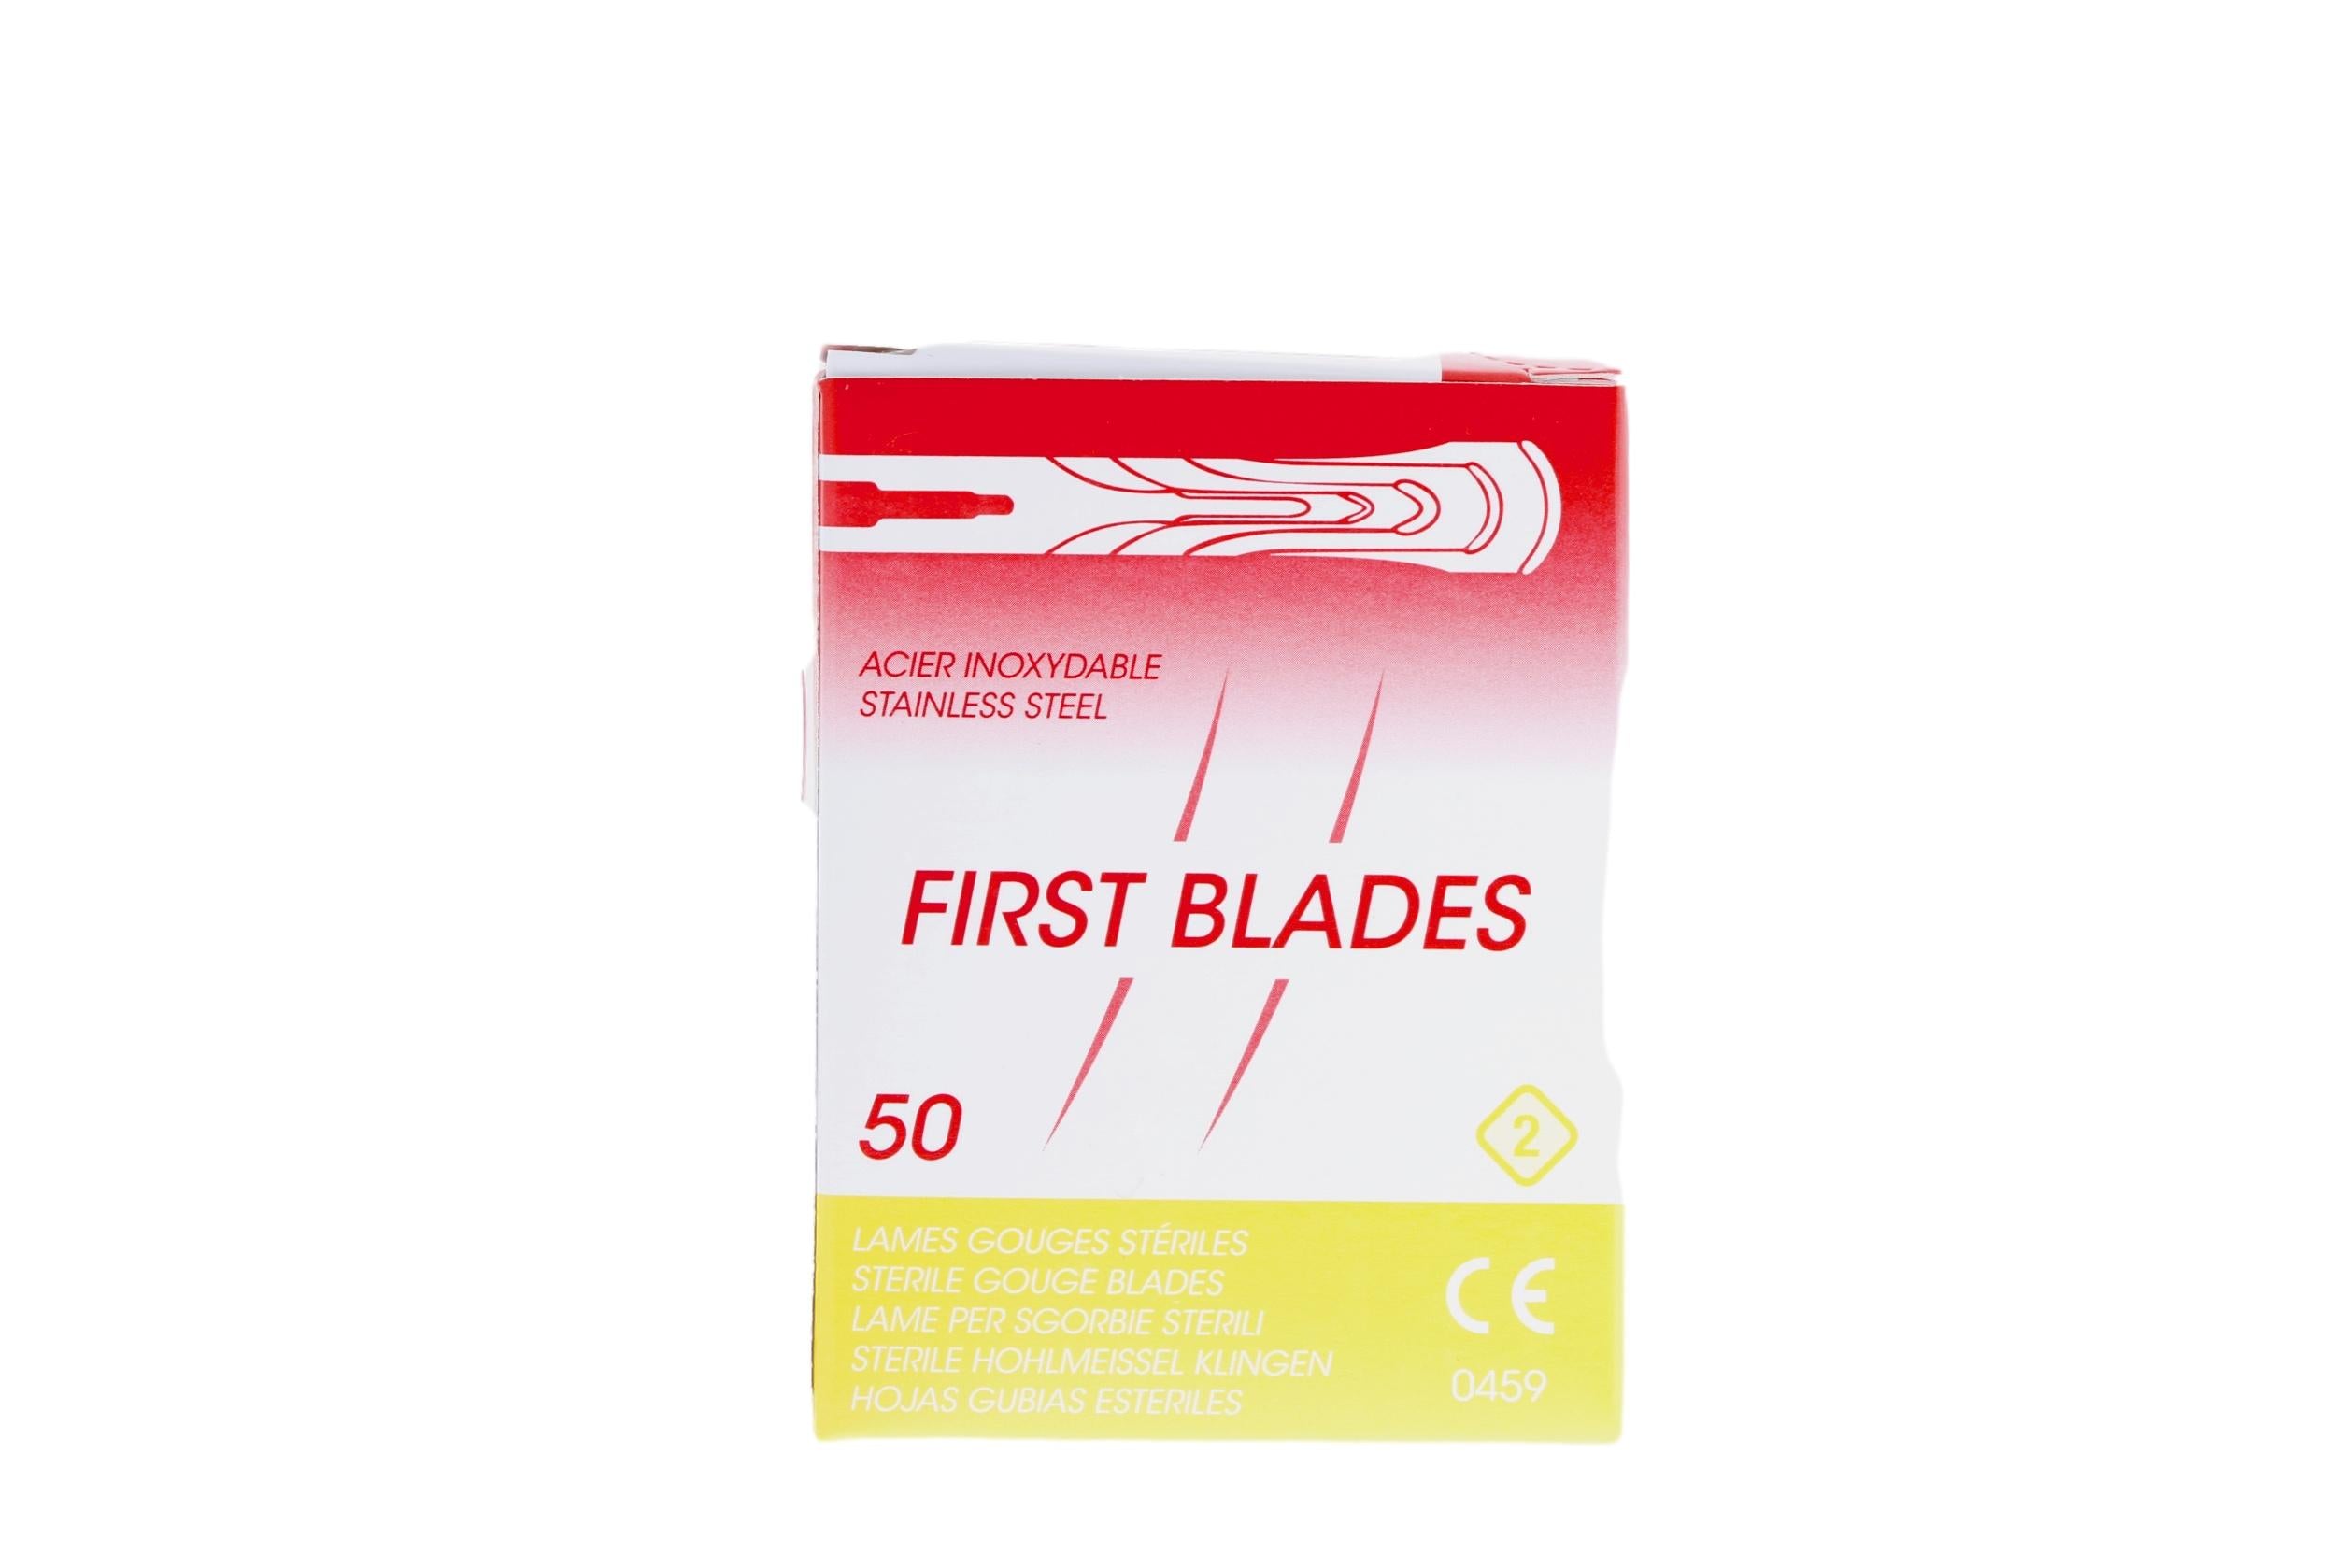 50 lames de gouges stériles - First Blades